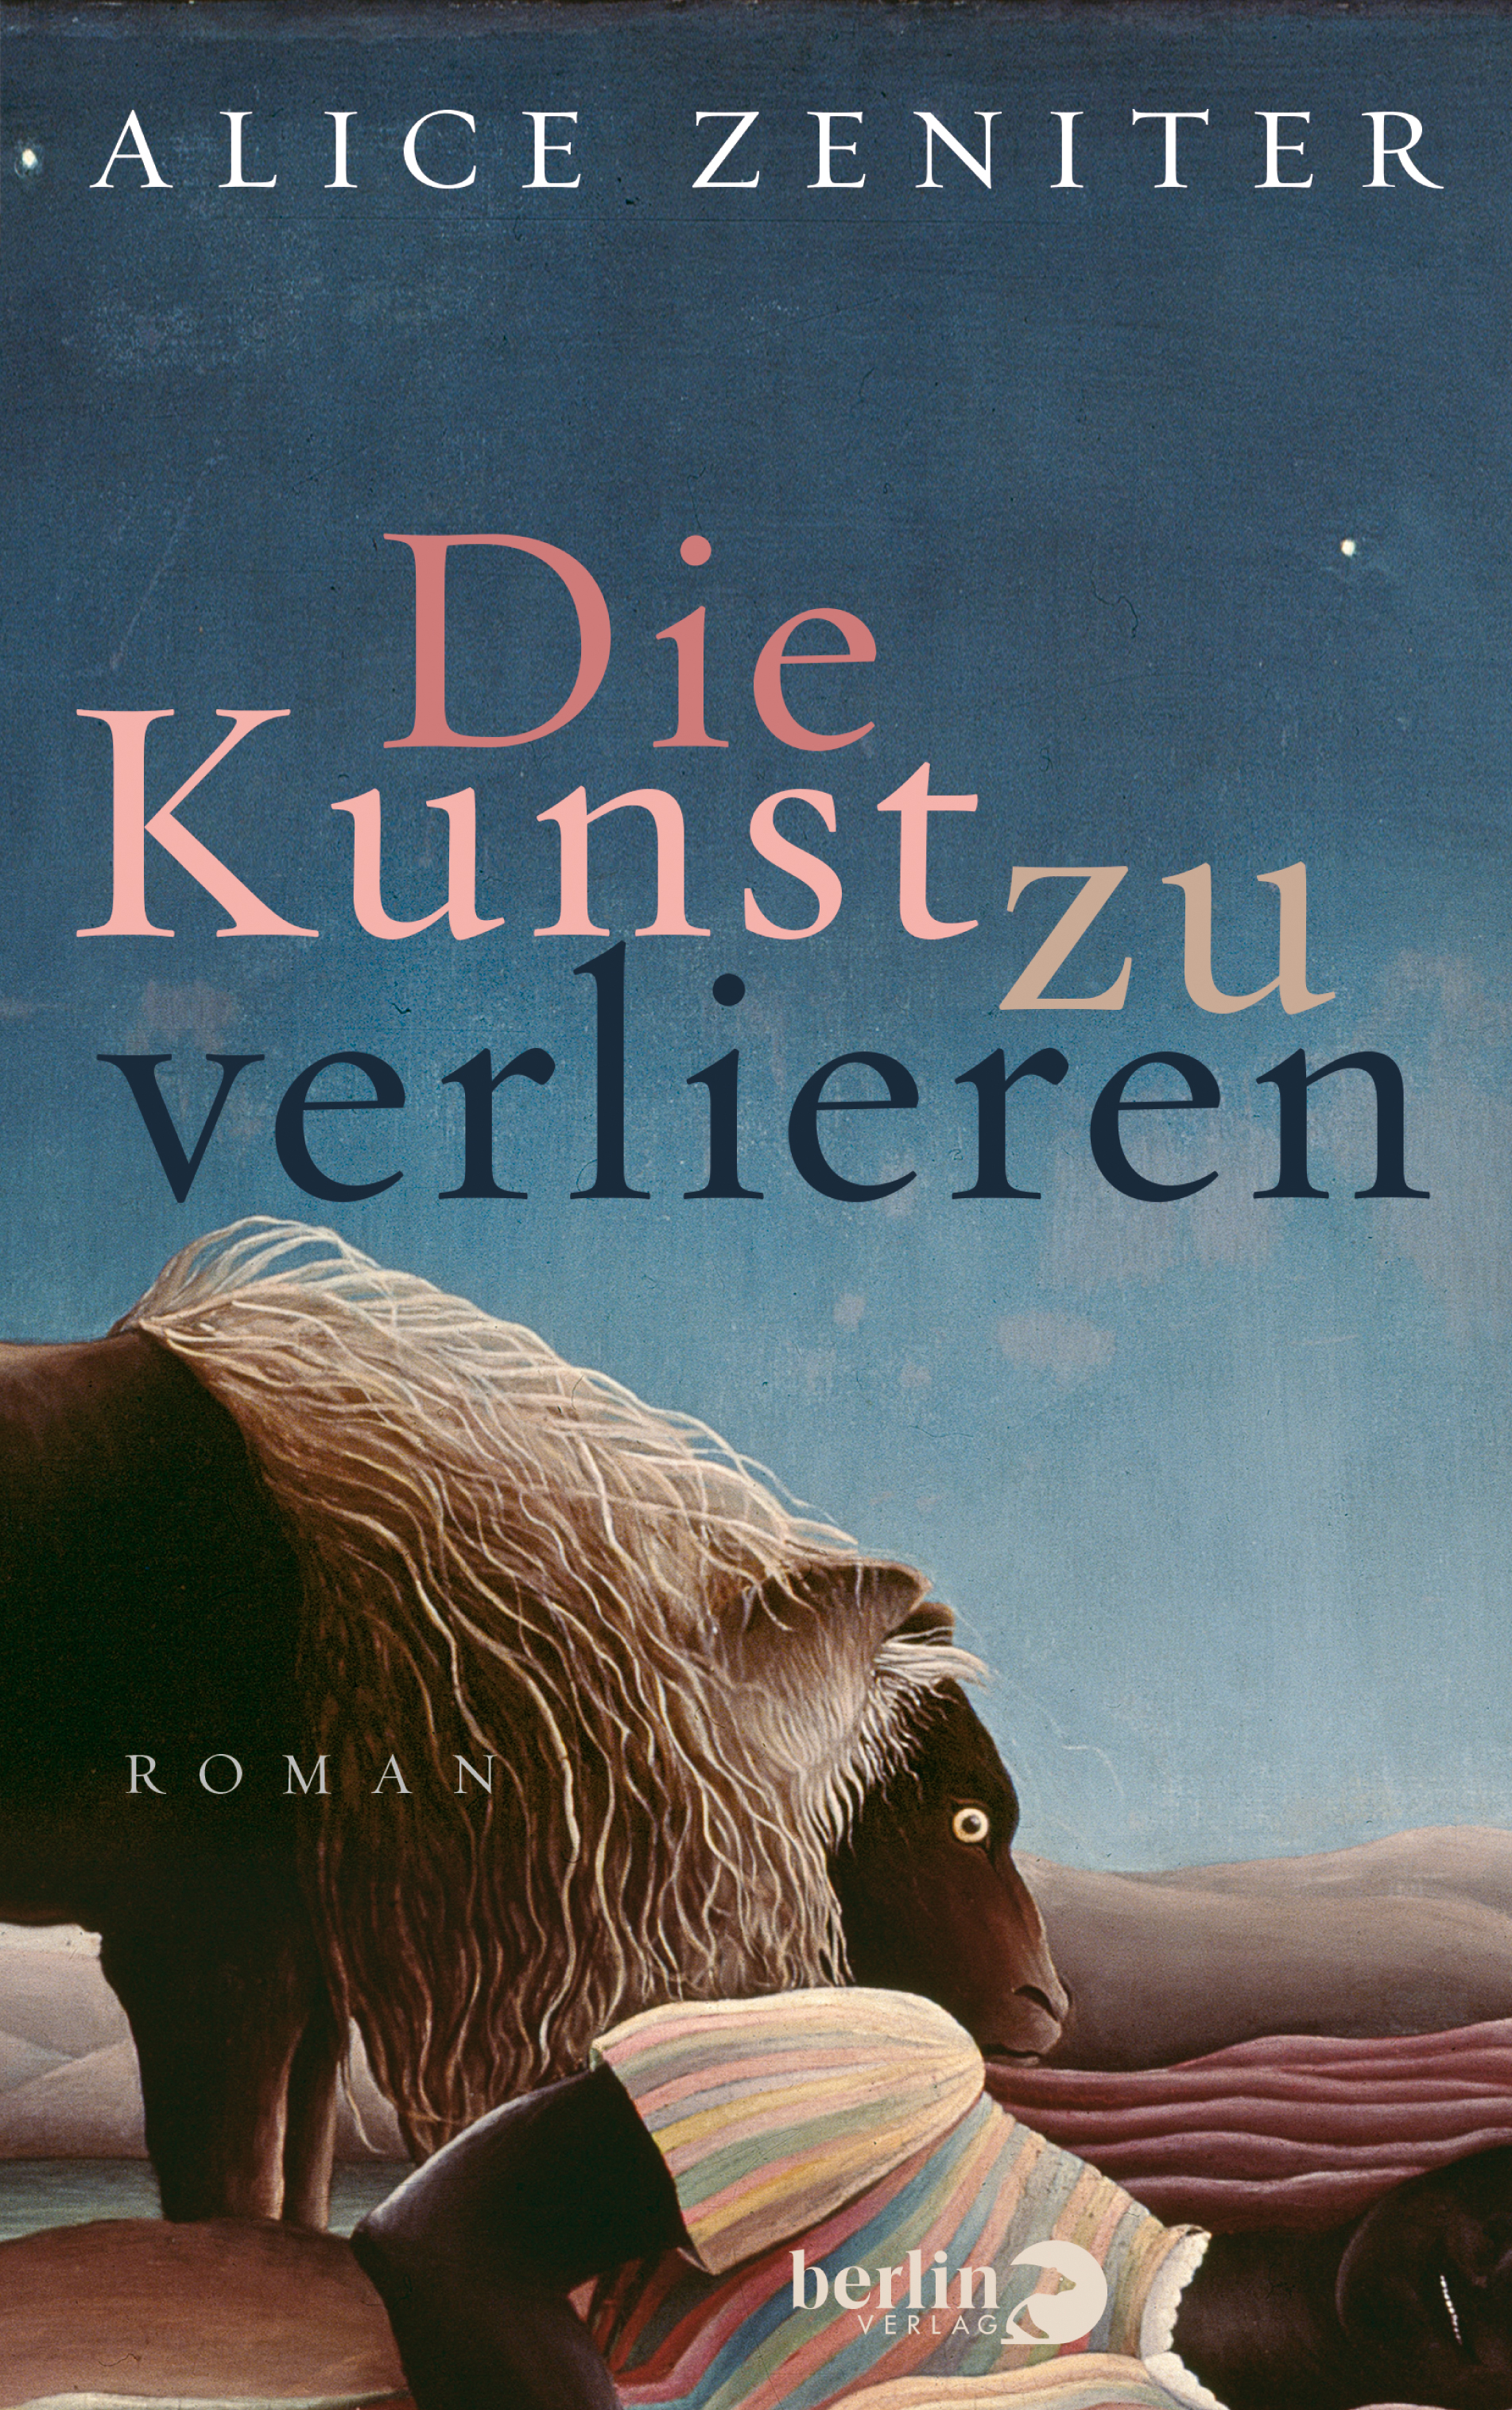 Buchcover Alice Zeniter: "Die Kunst zu verlieren" im Piper-Verlag München